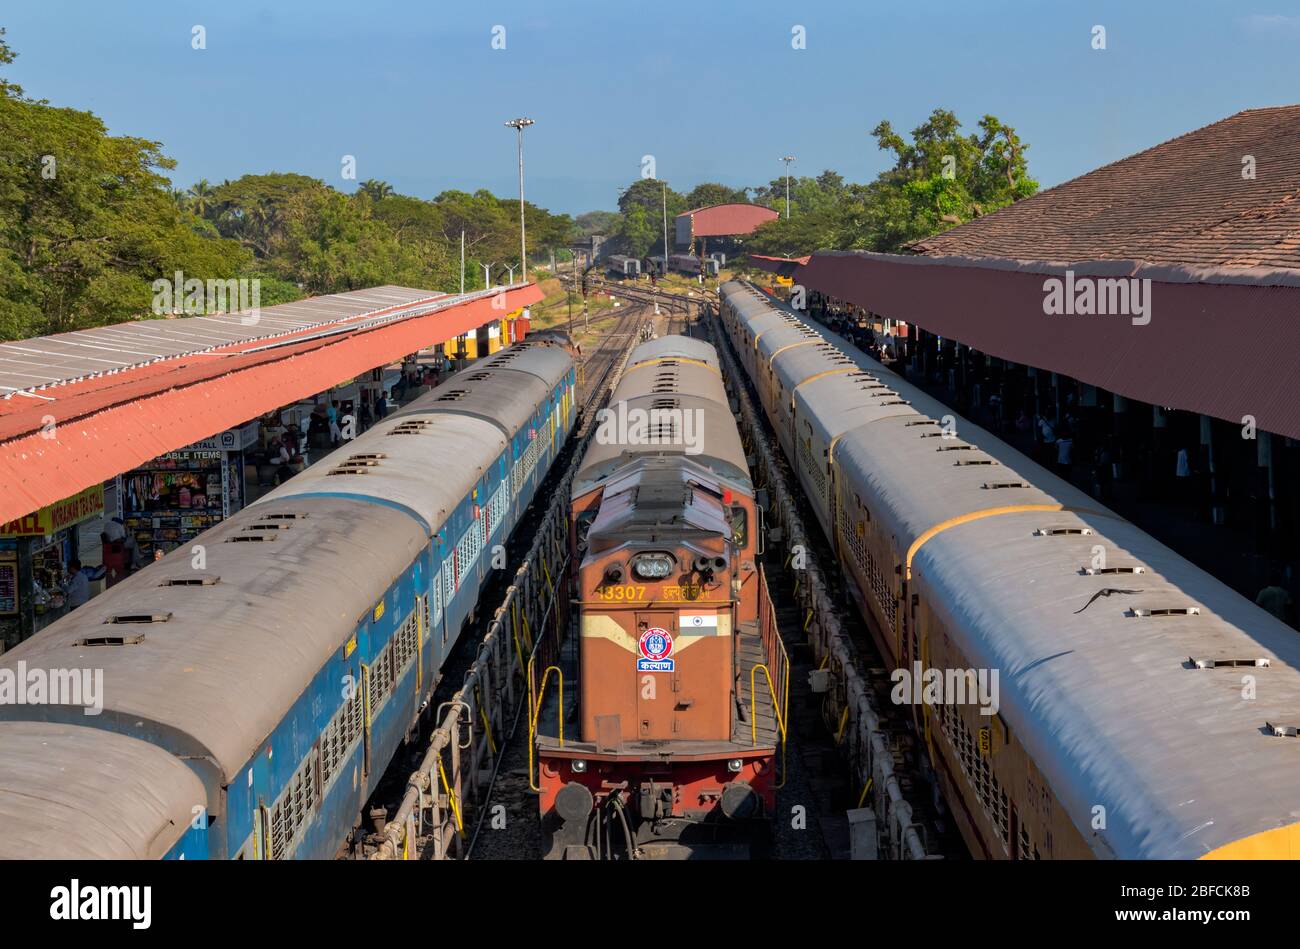 Züge der indischen Eisenbahn, an Bahnsteig für Passagierbeförderung und warten auf grünes Signal zur geplanten Zeit von Margao Bahnhof abzufahren Stockfoto